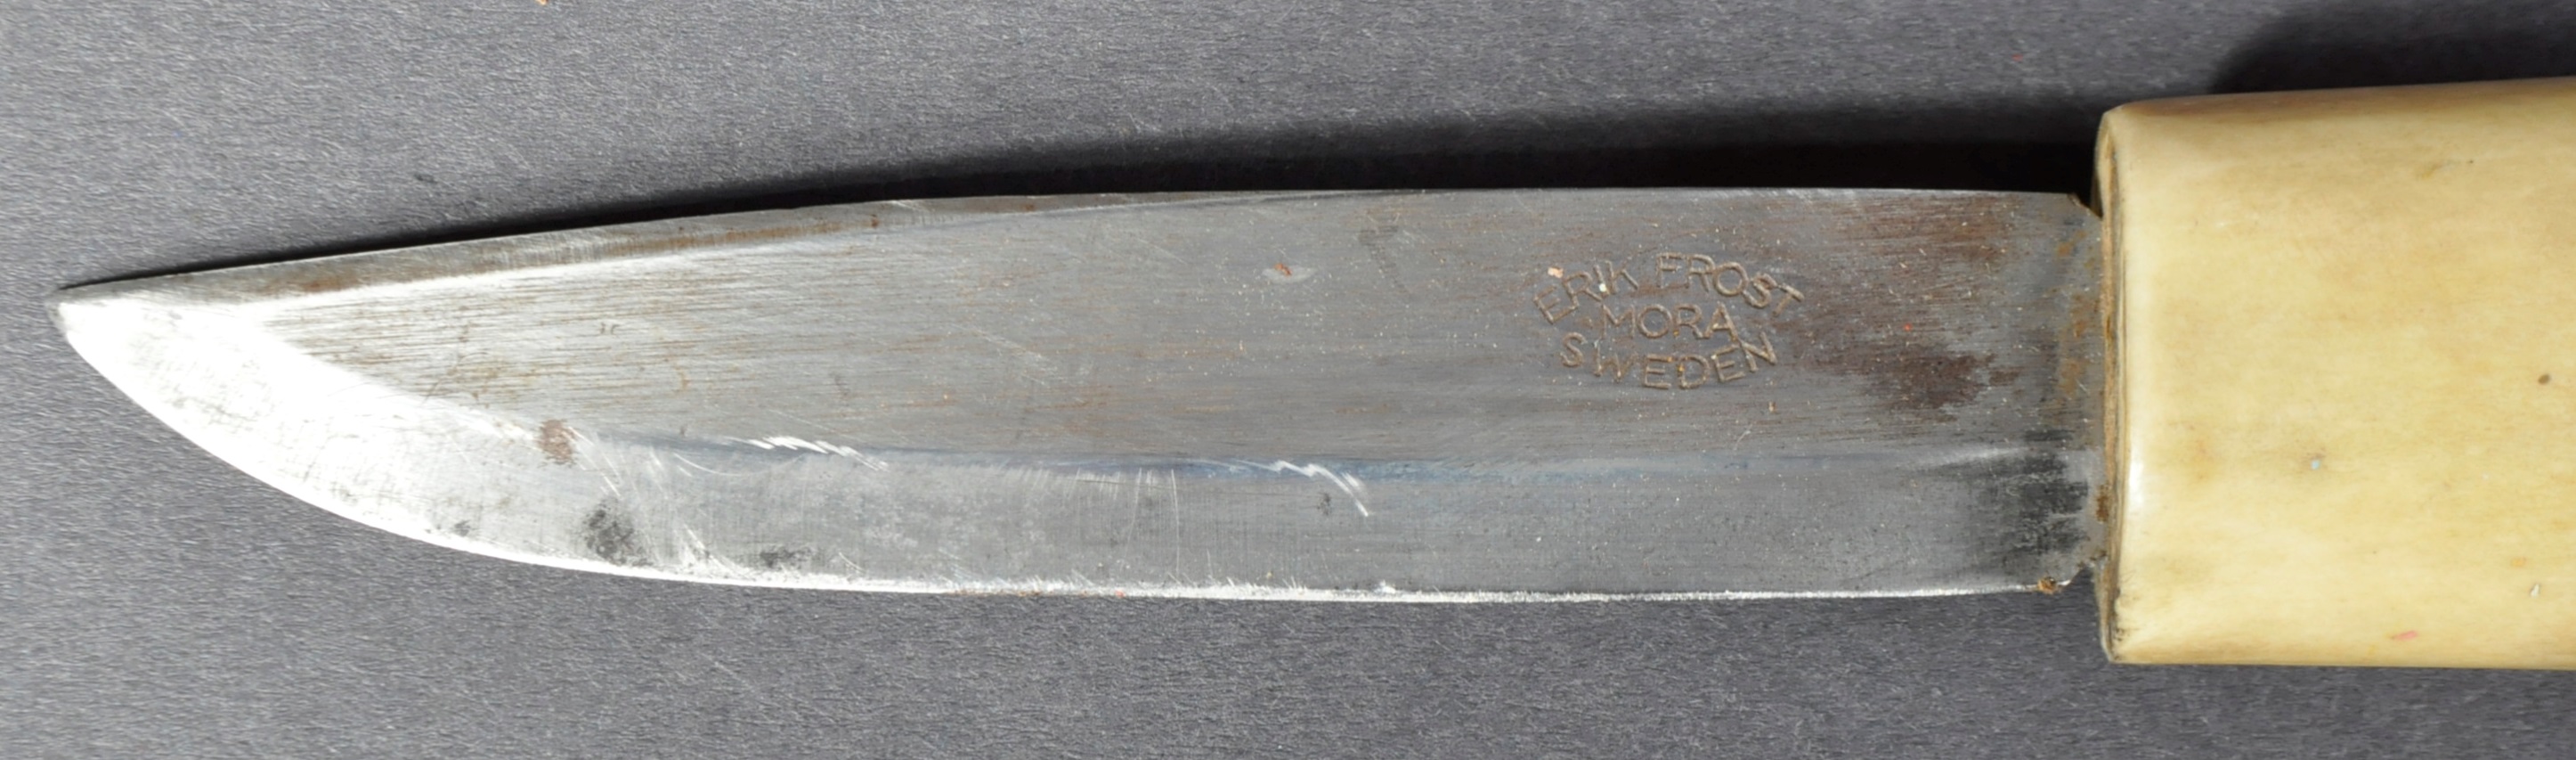 ERIK FROST - MORA - SWEDEN - ANTLER HANDLED DAGGER / KNIFE - Image 3 of 5